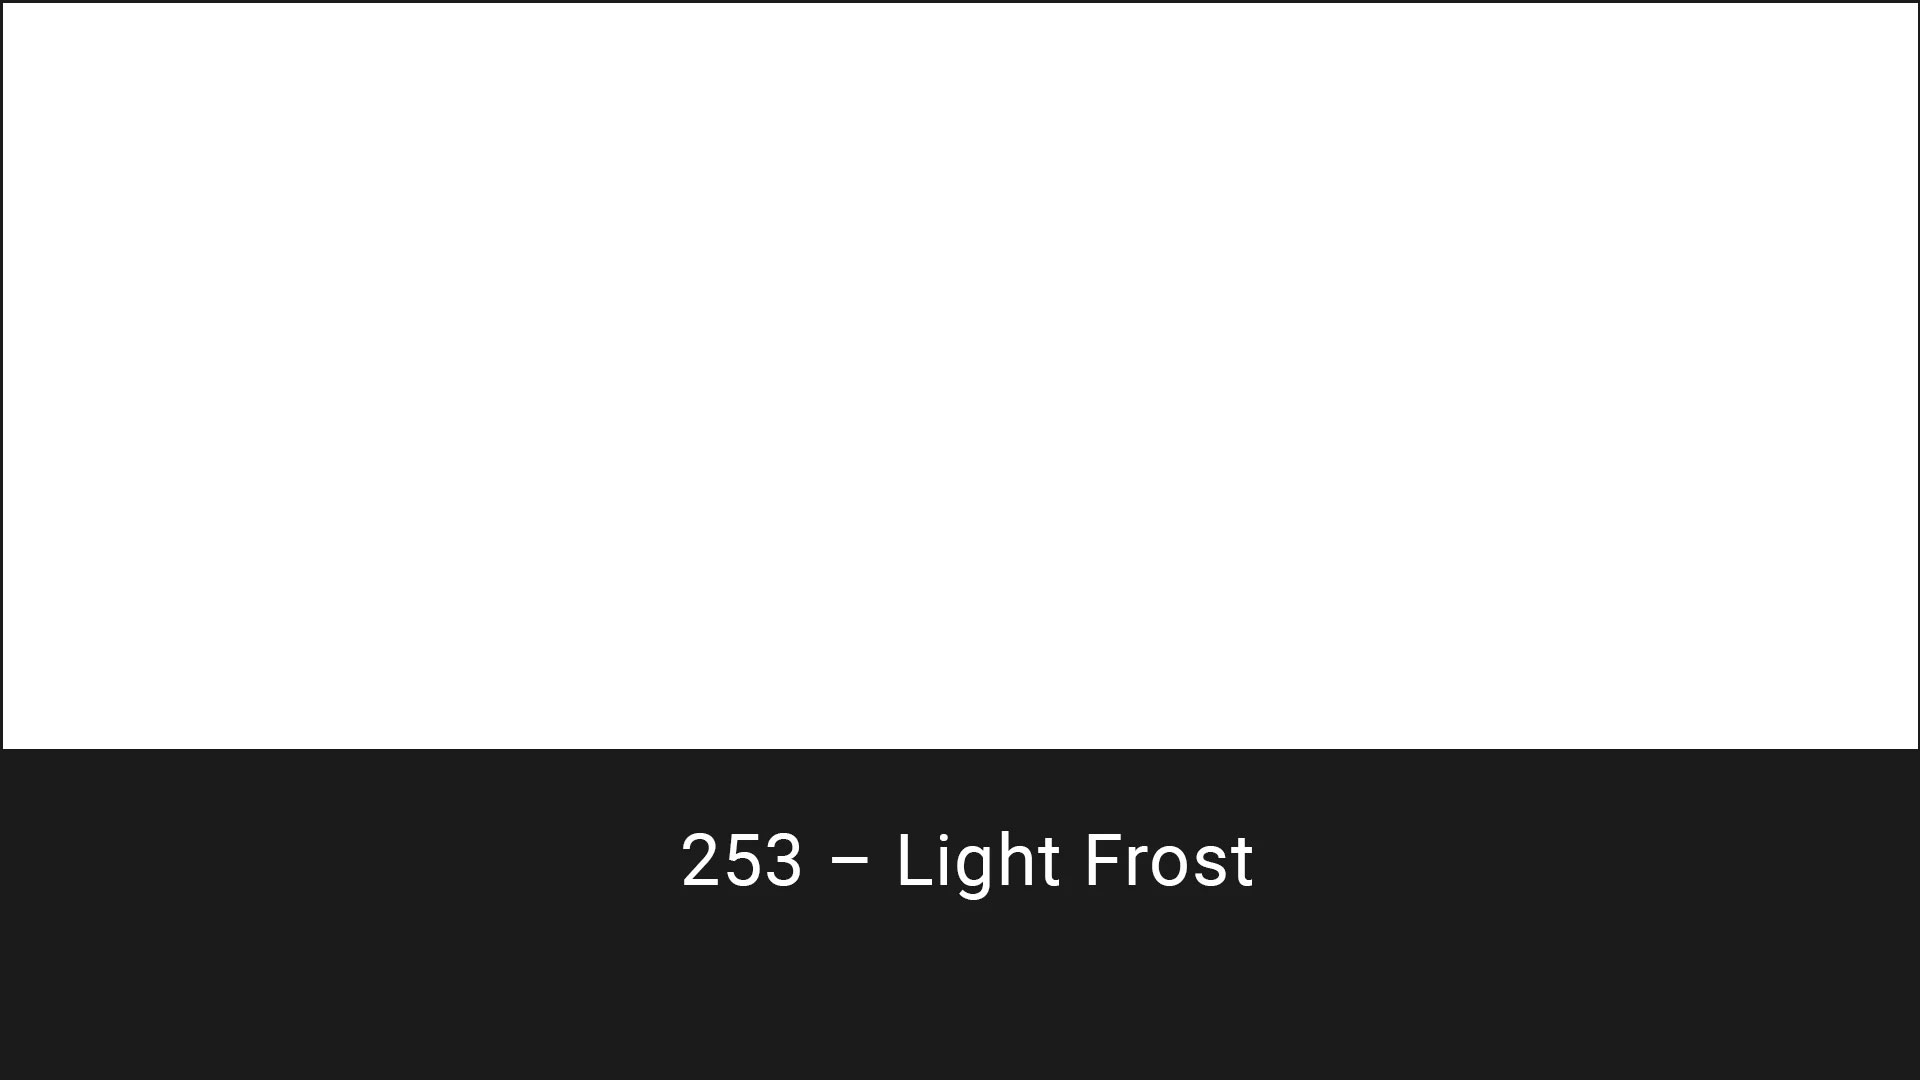 Cotech filters 253 Light Frost